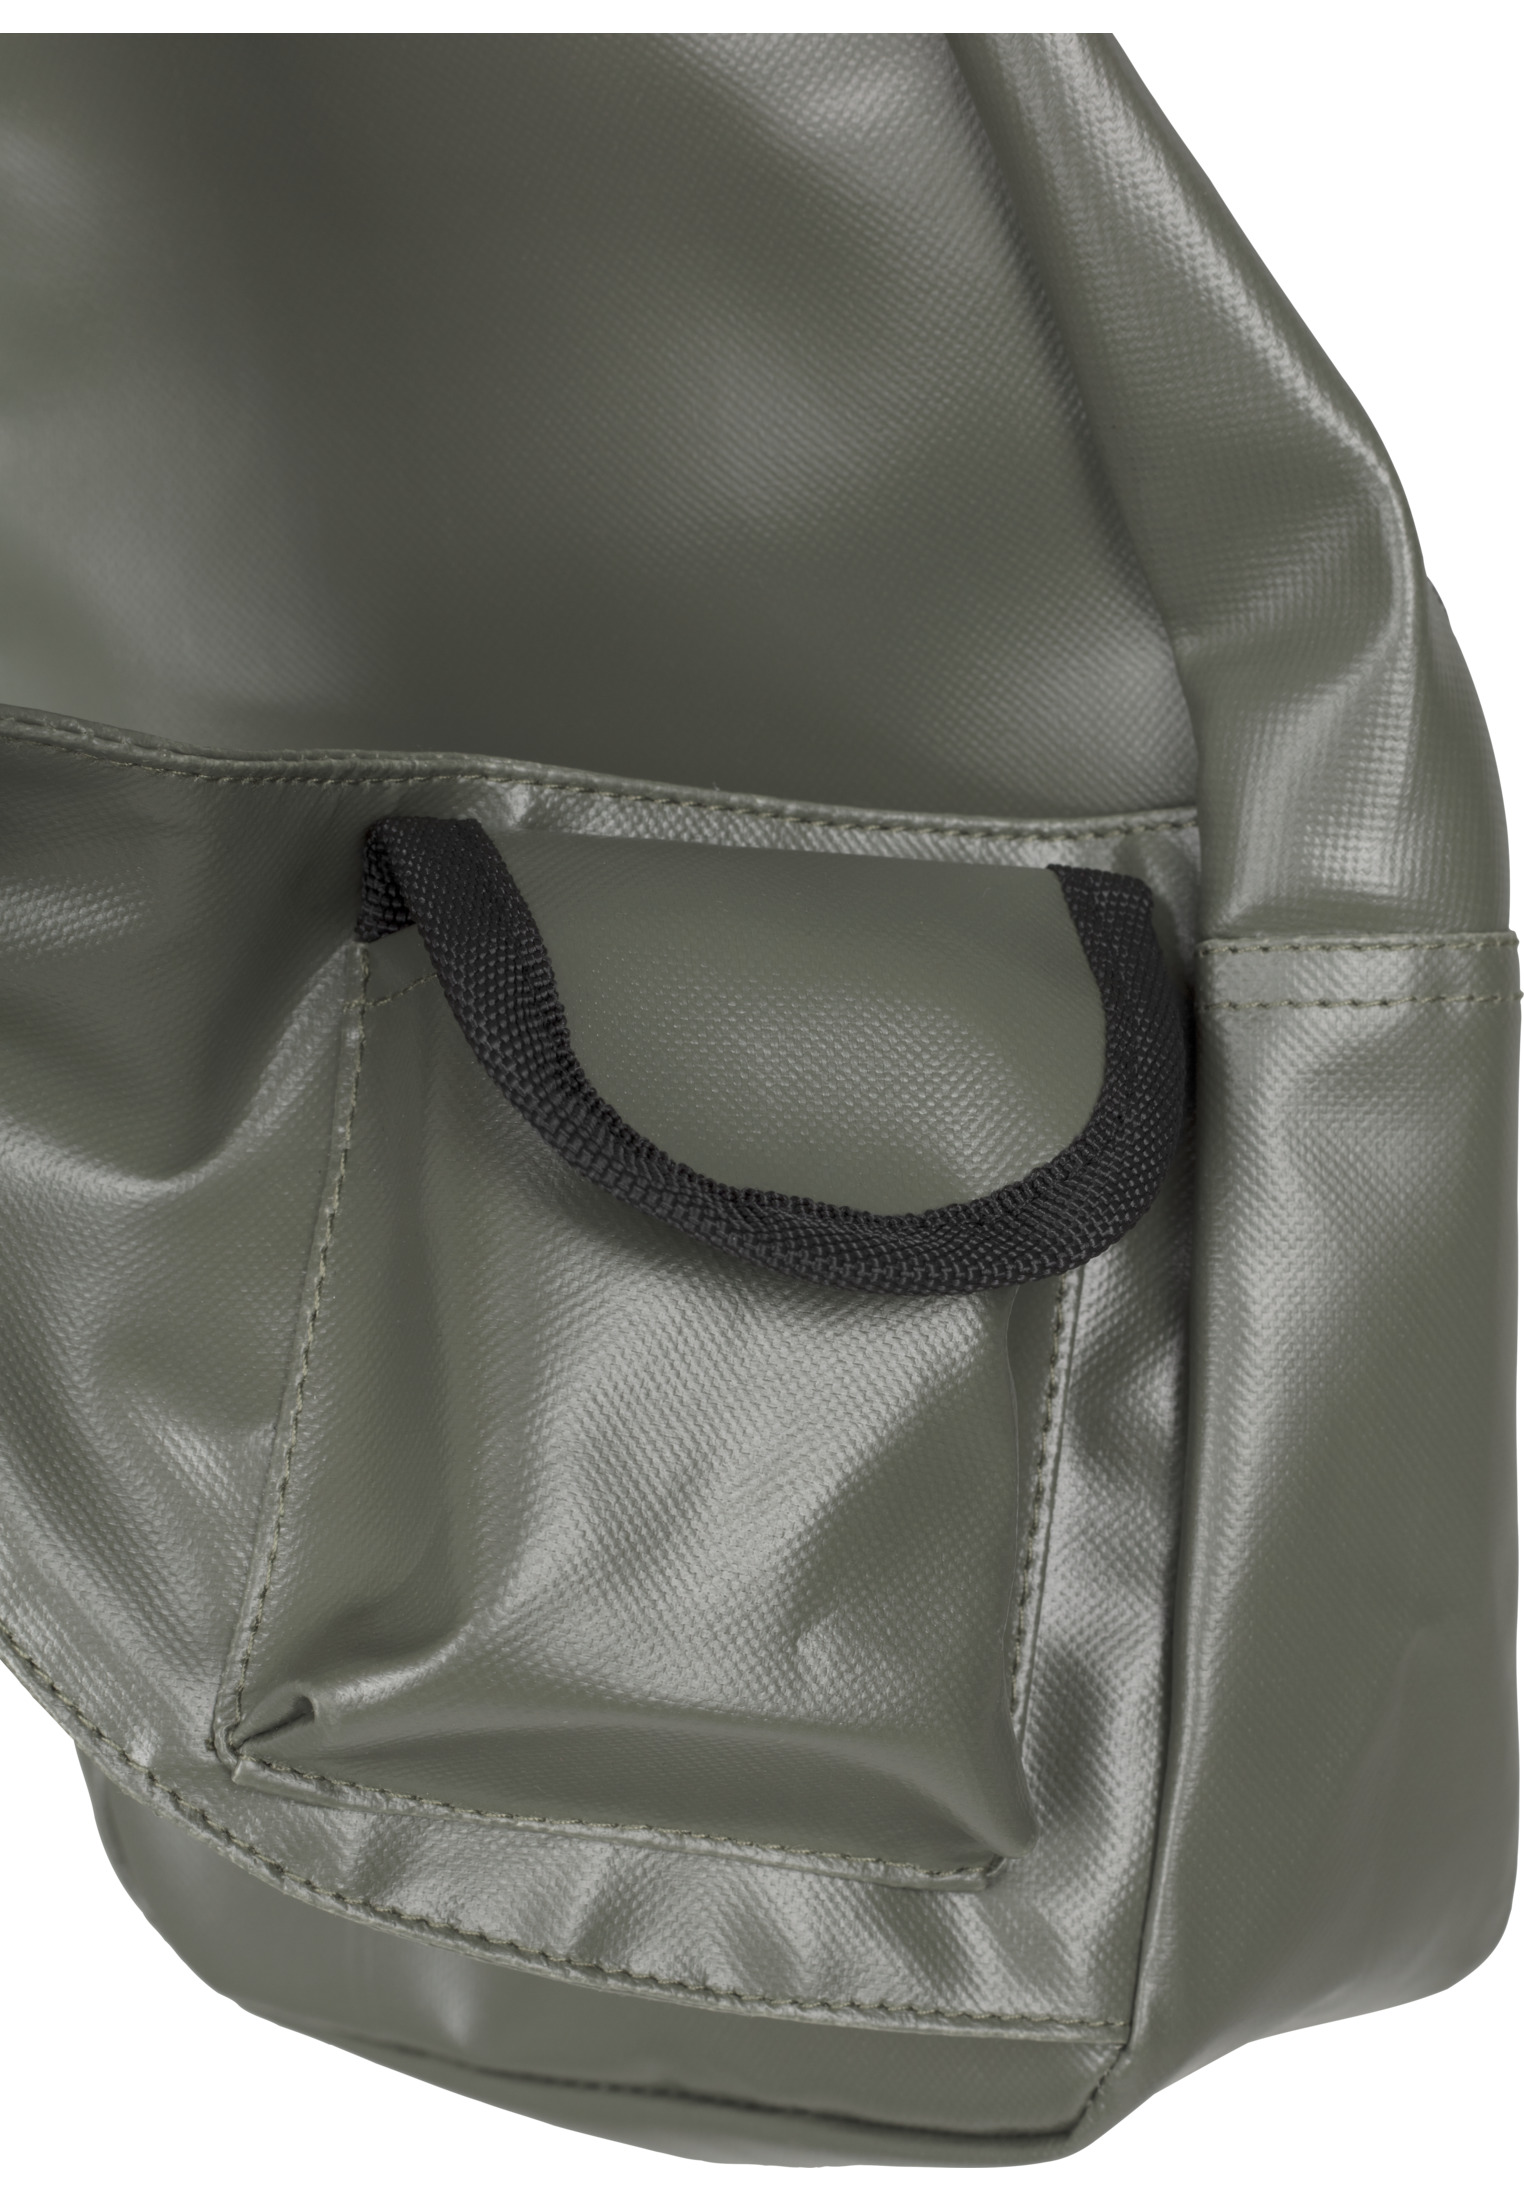 Taschen Multi Pocket Shoulder Bag in Farbe olive/black